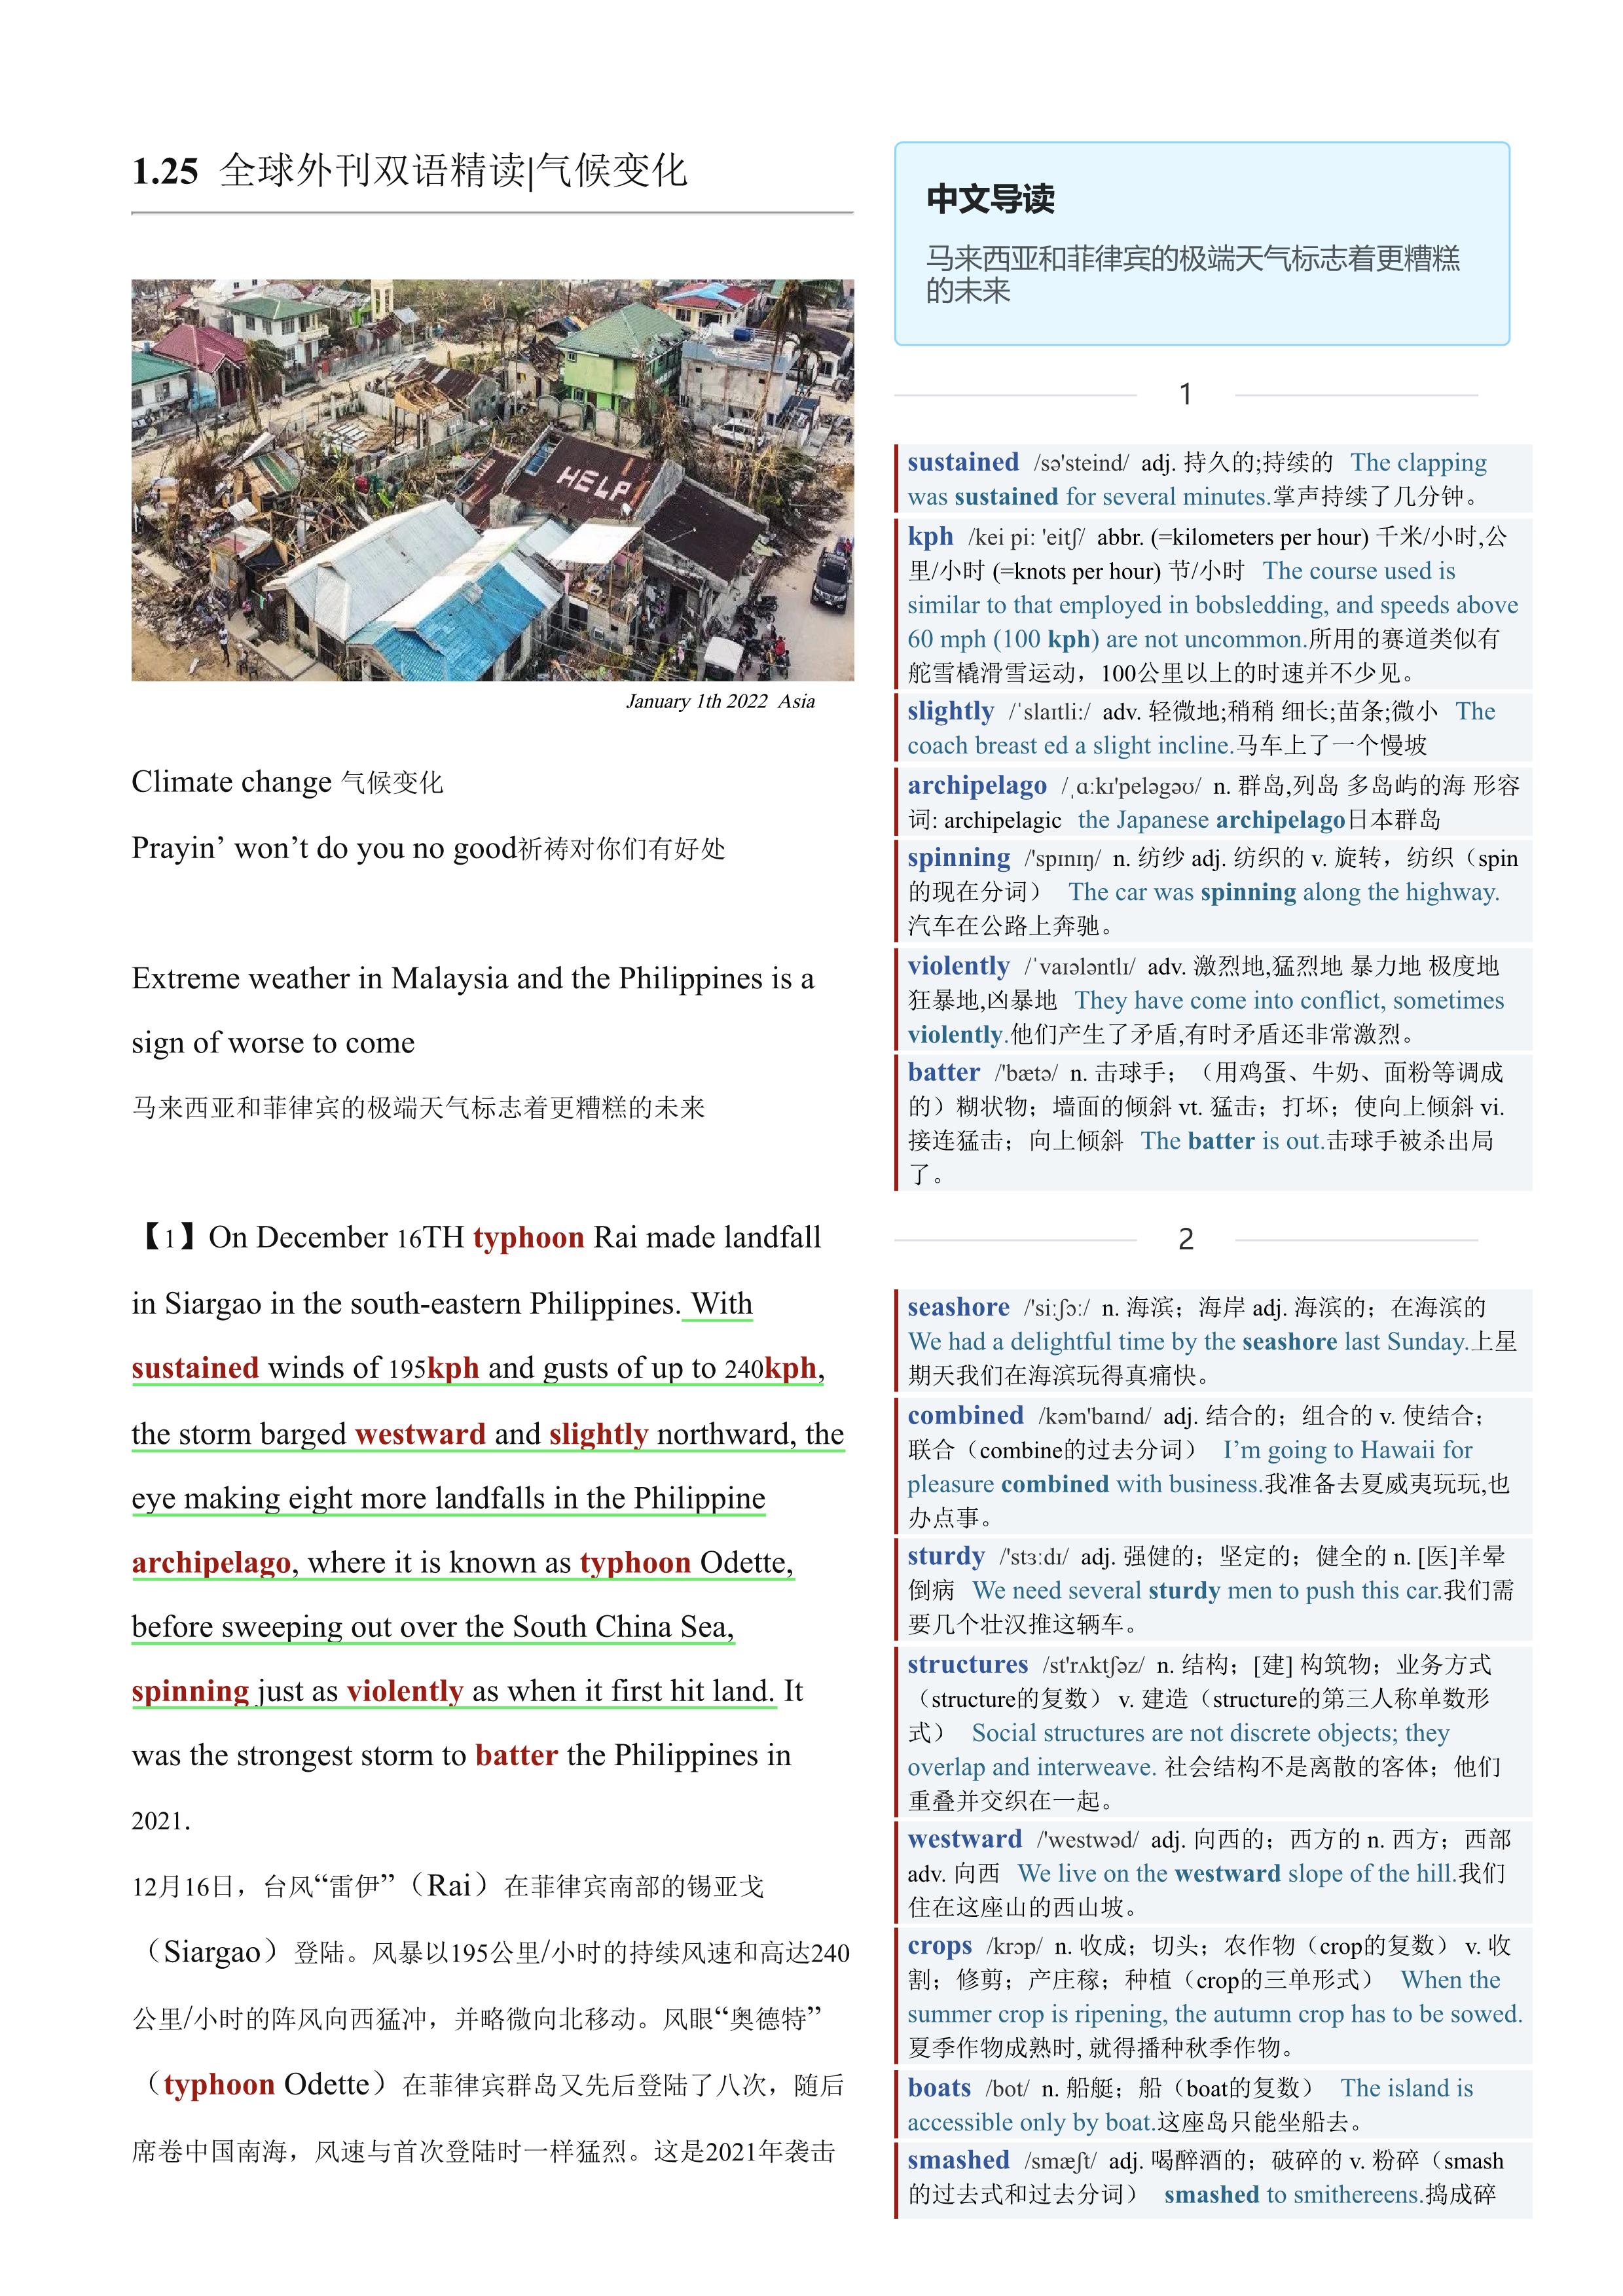 2022.01.25 经济学人双语精读丨气候变化 (.PDF/DOC/MP3)